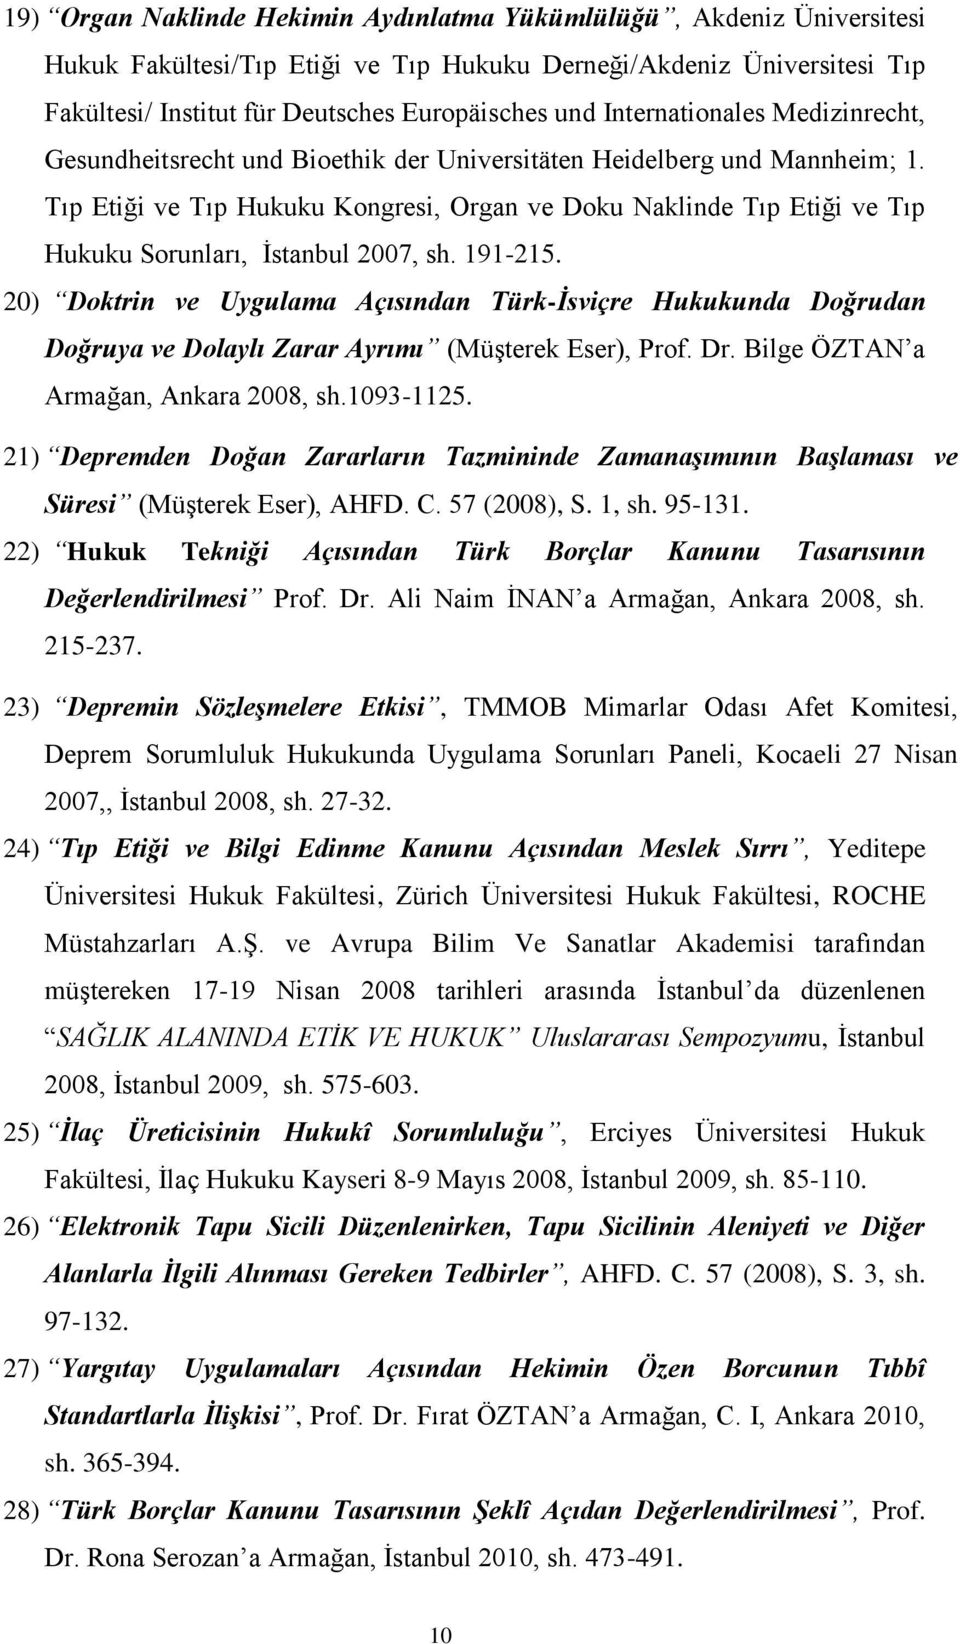 Tıp Etiği ve Tıp Hukuku Kongresi, Organ ve Doku Naklinde Tıp Etiği ve Tıp Hukuku Sorunları, İstanbul 2007, sh. 191-215.